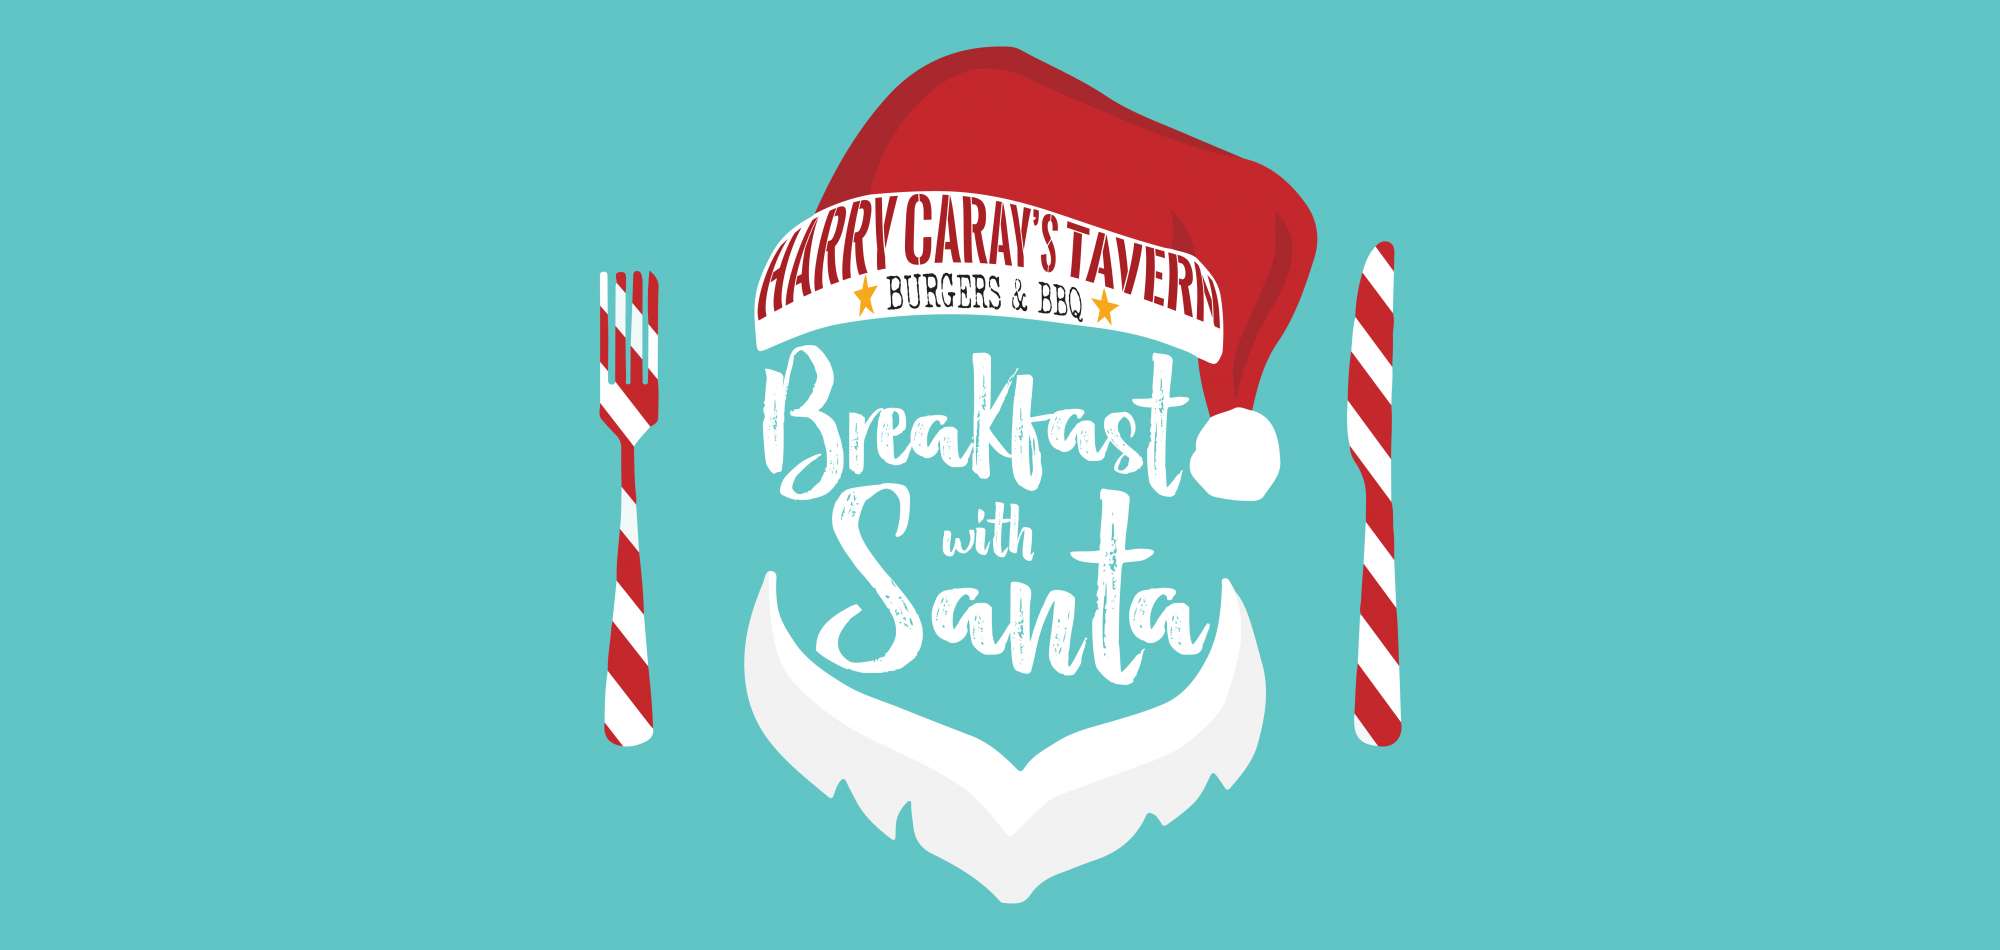 Breakfast with Santa at Harry Caray’s Tavern